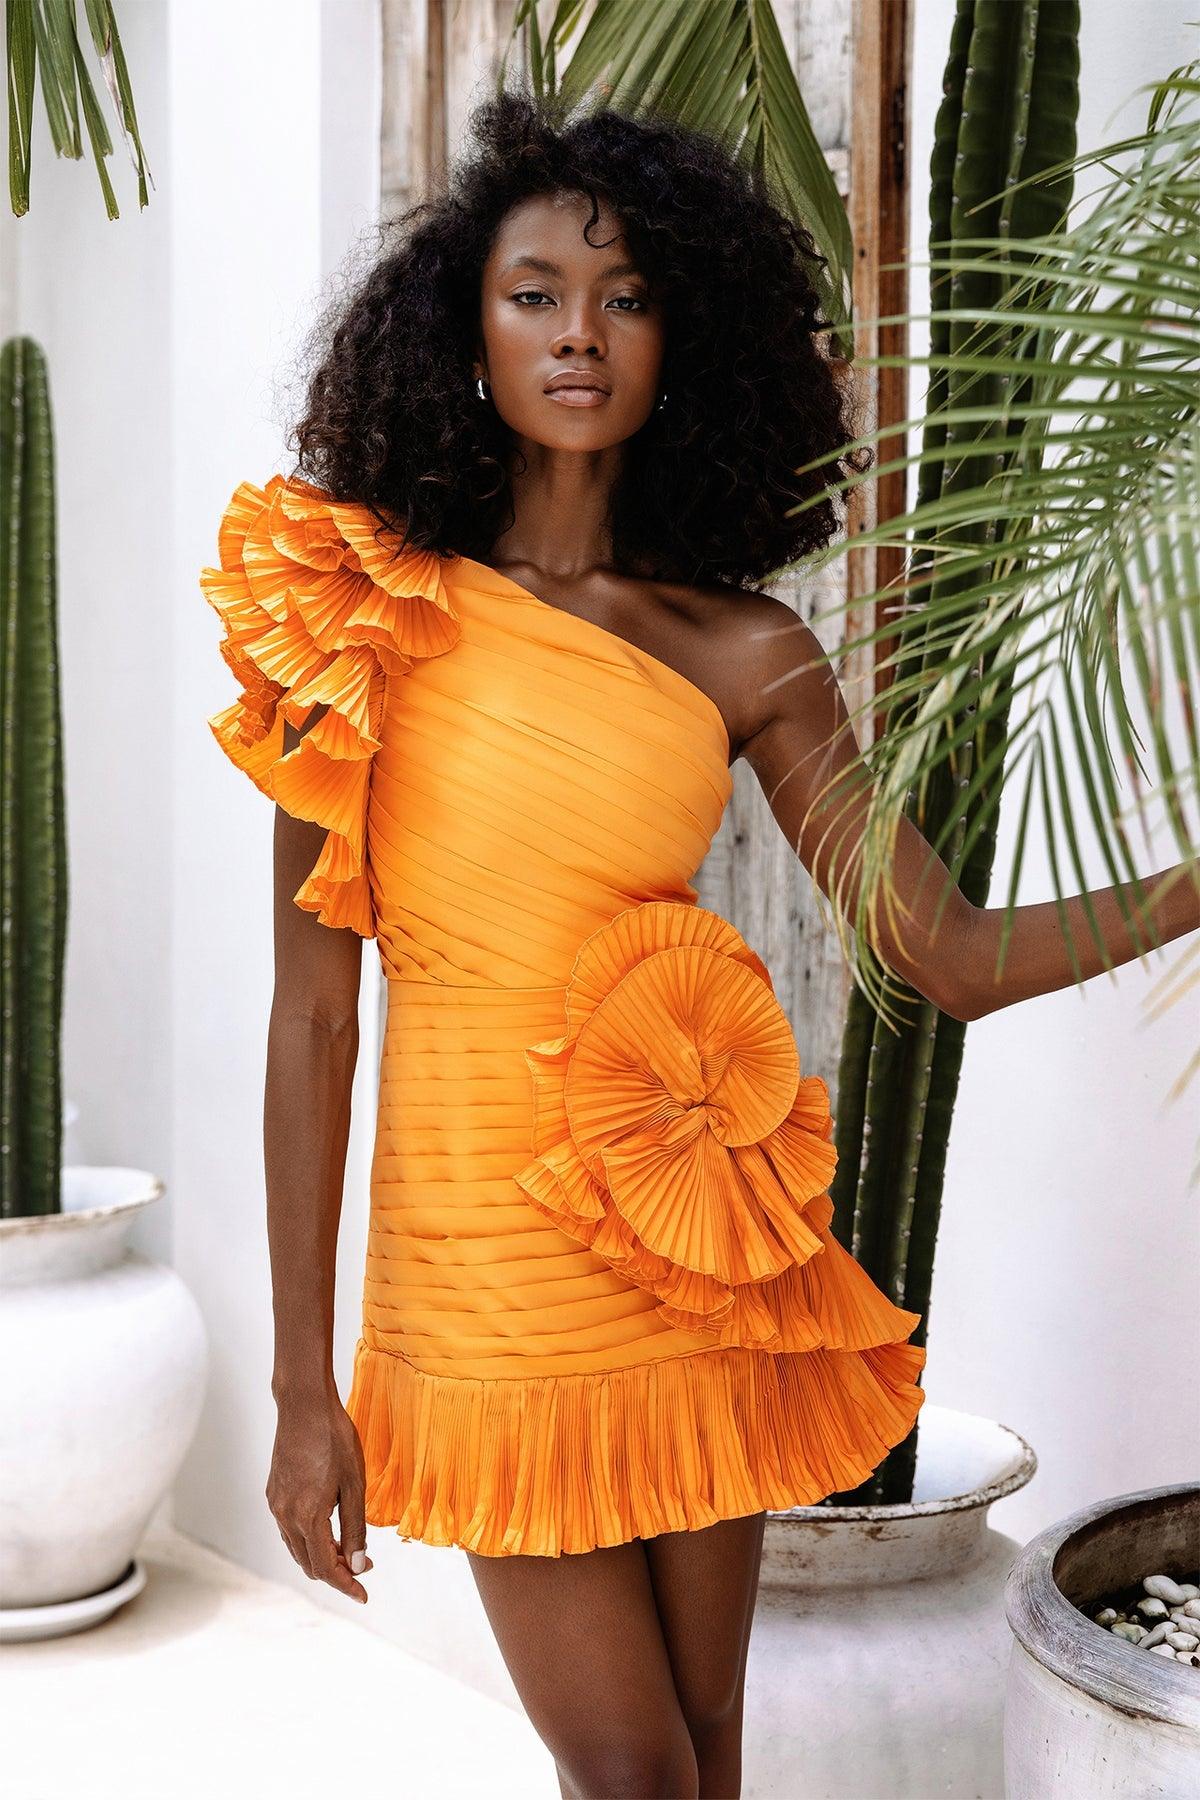 Zoiva Dress - Orange - JAUS